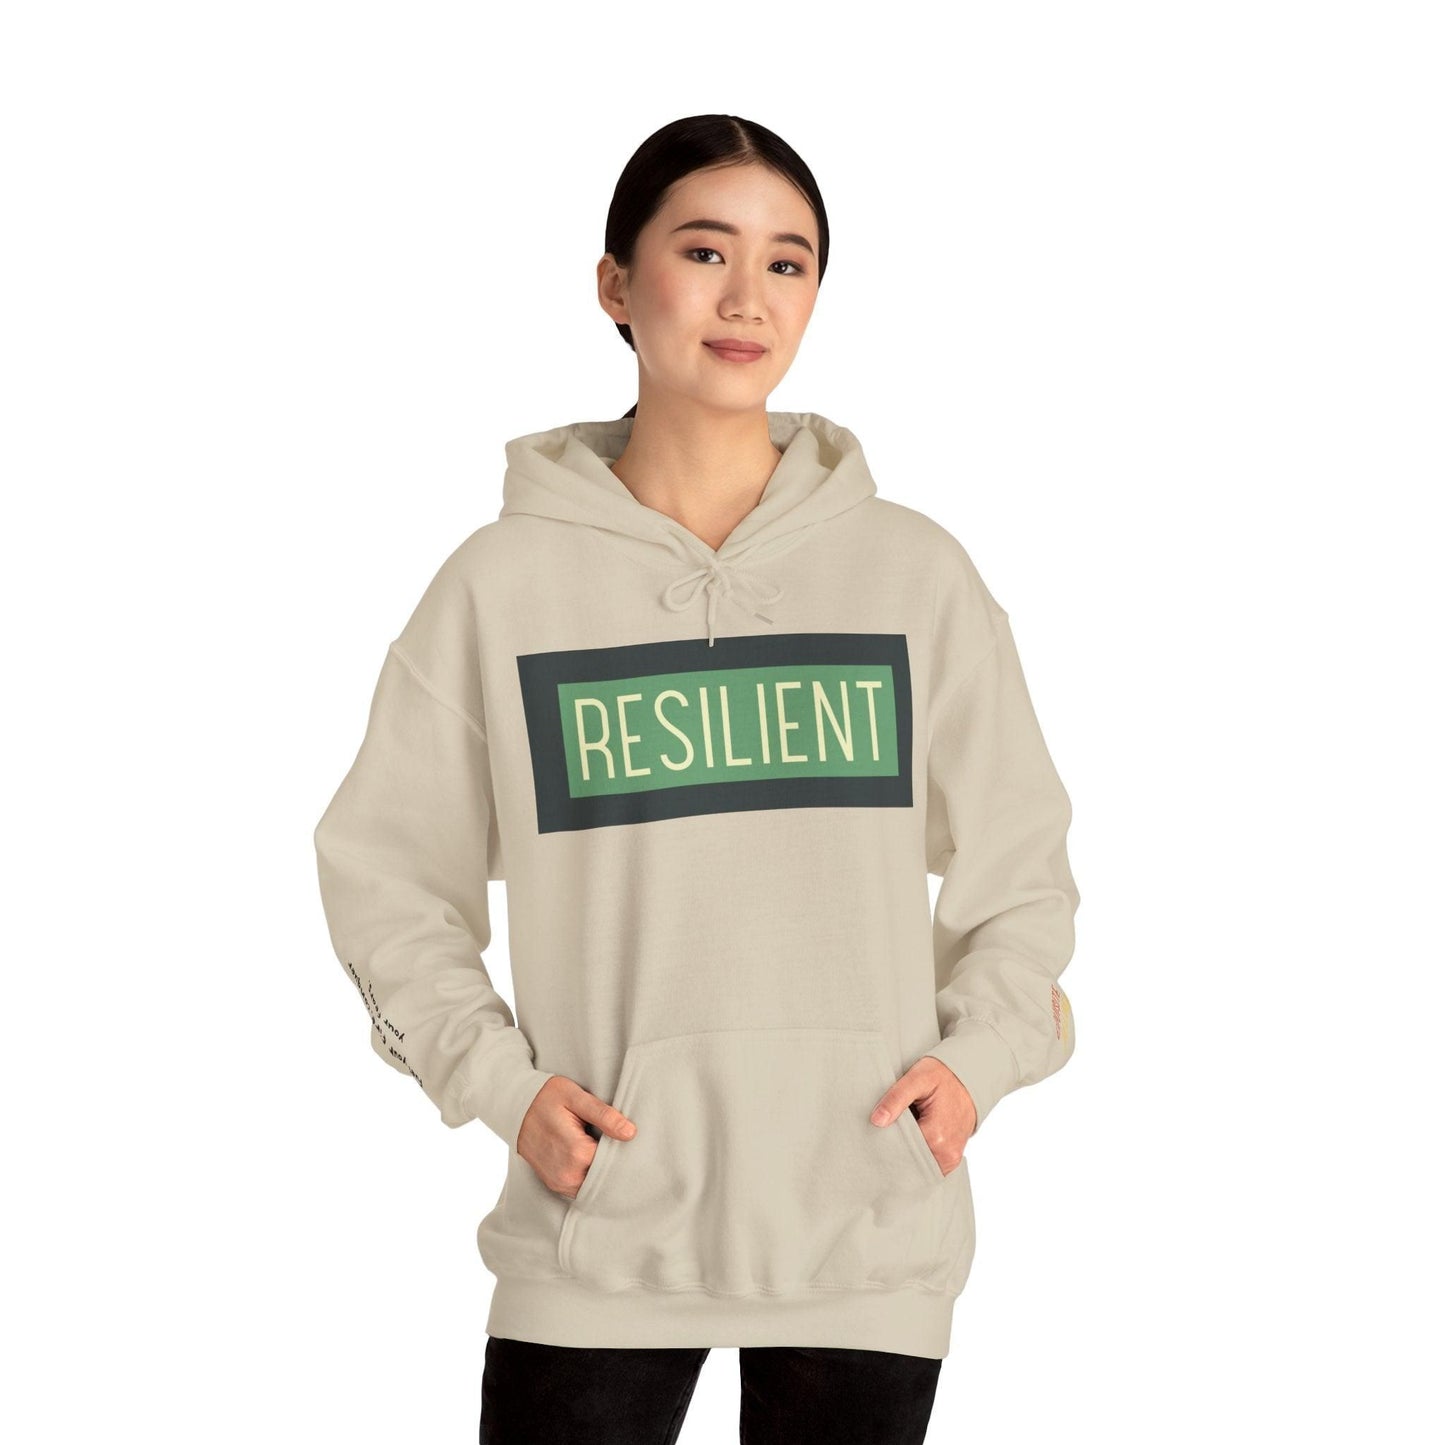 Resilient Unisex Heavy Blend Hooded Sweatshirt Hoodie Sand S 